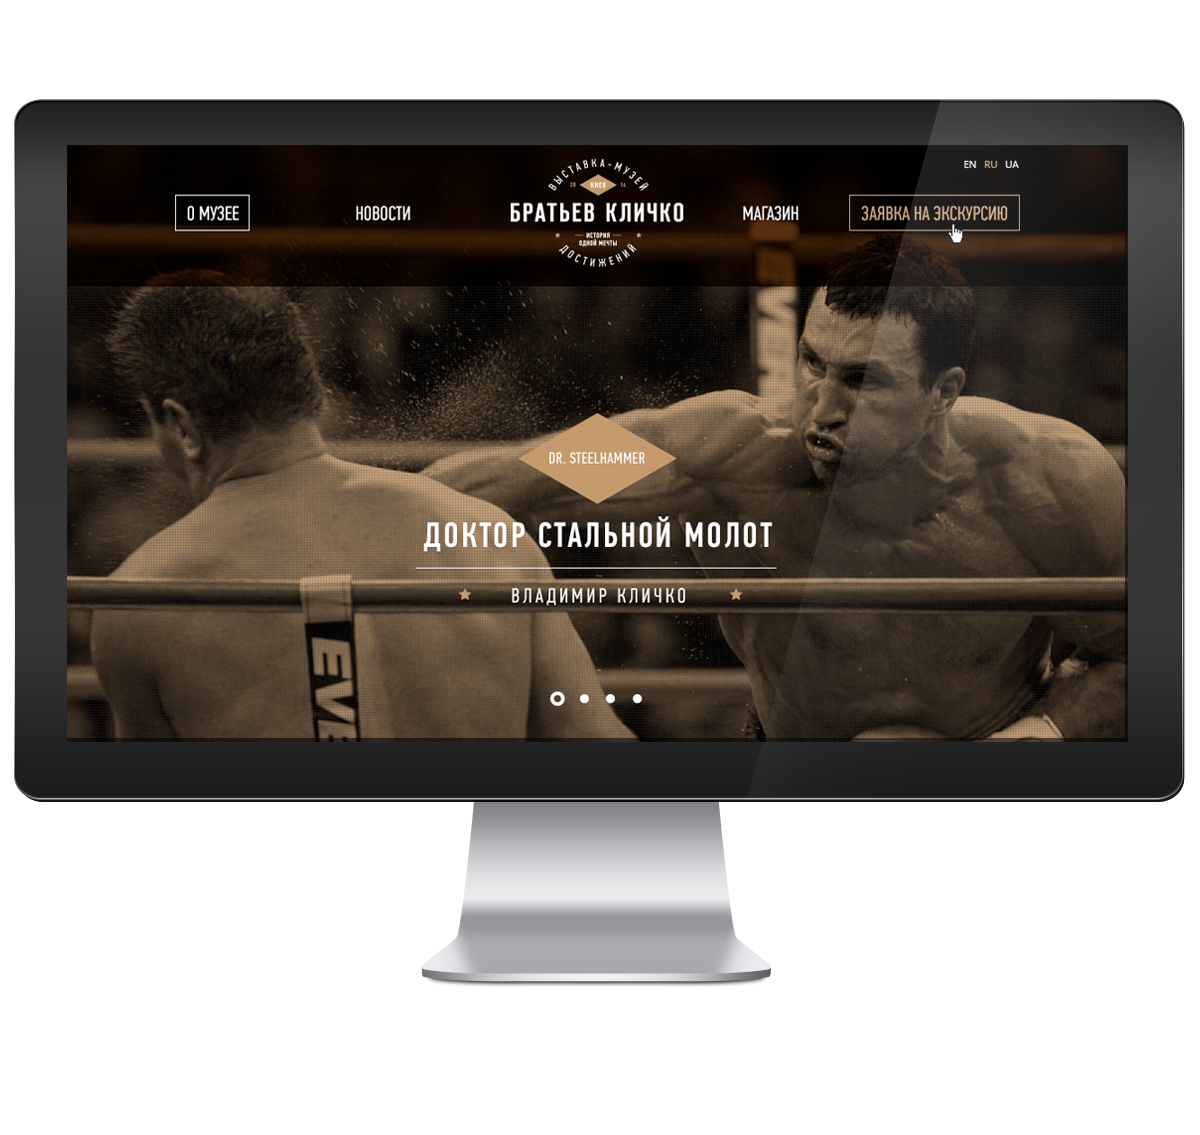 Klitschko identity Web Boxing champion print Boxer belt logo Lobby athlete sport